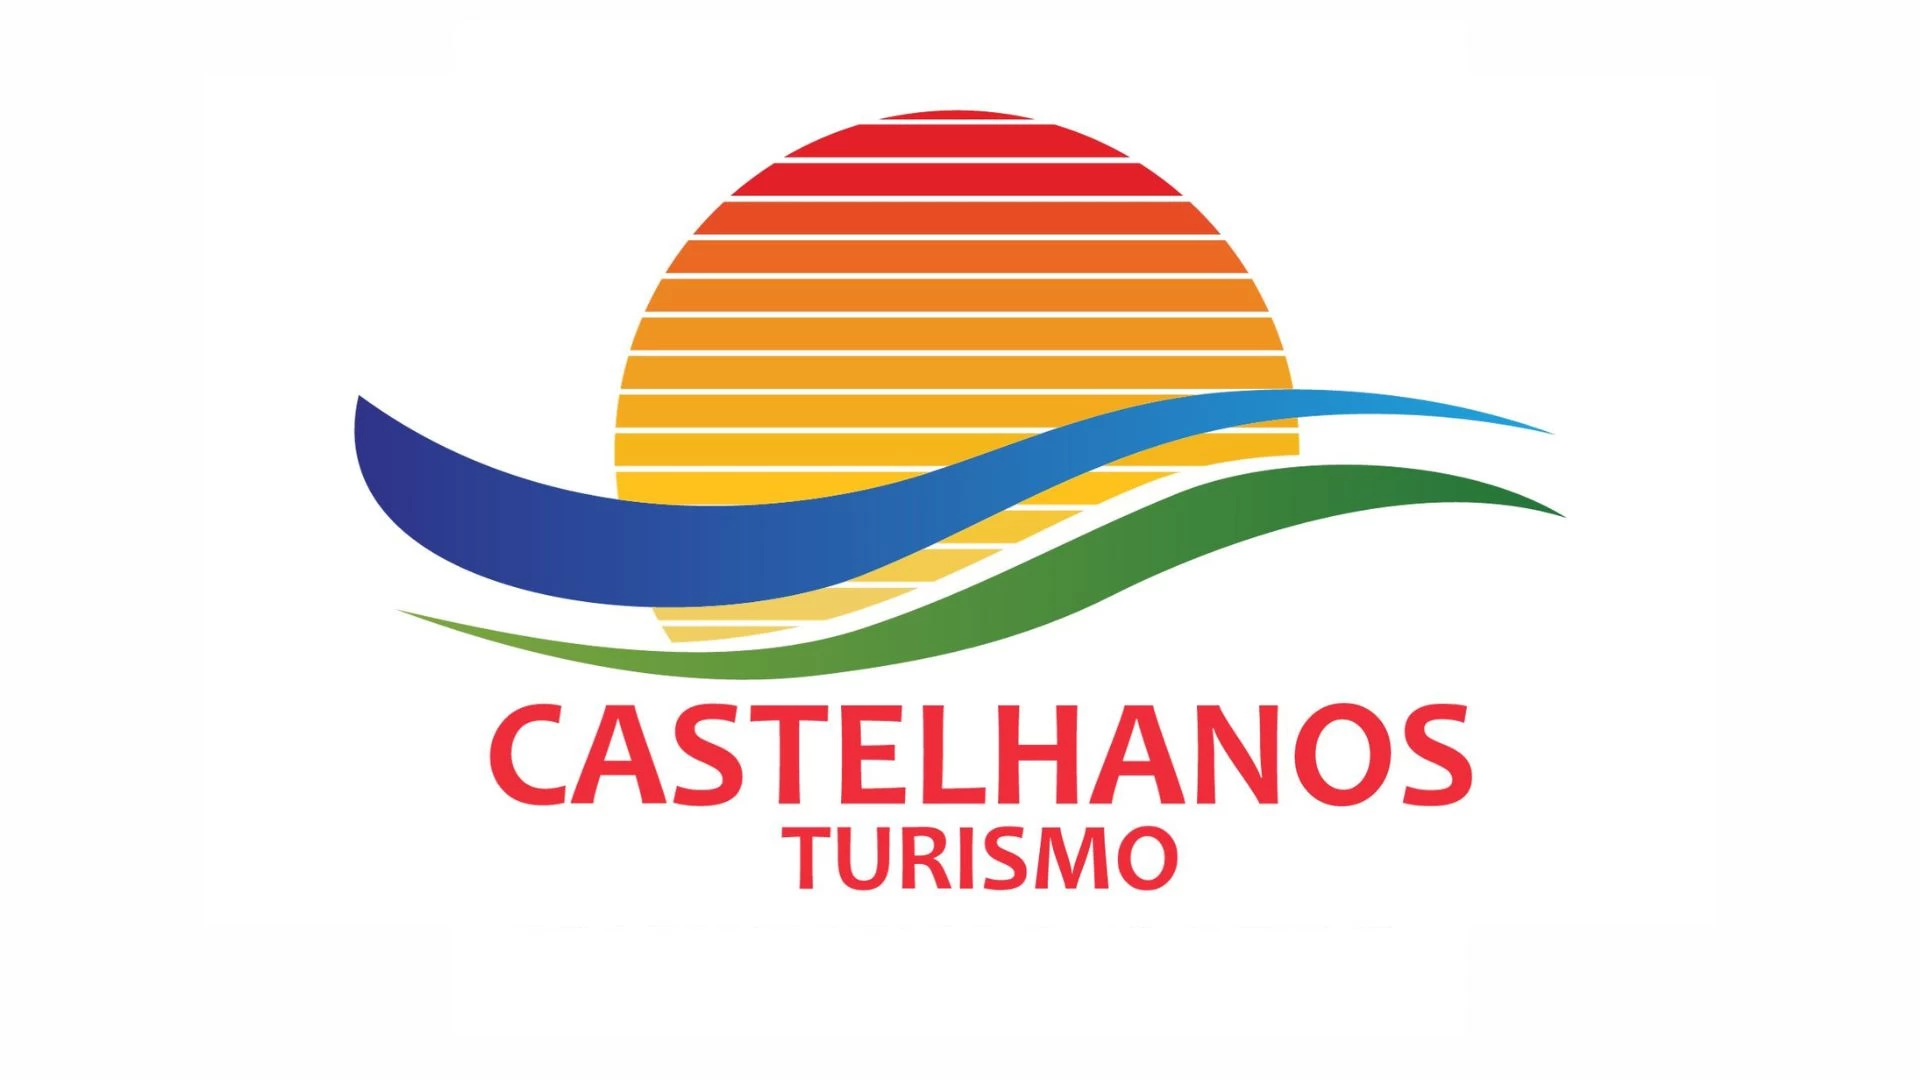 Castelhanos turismo